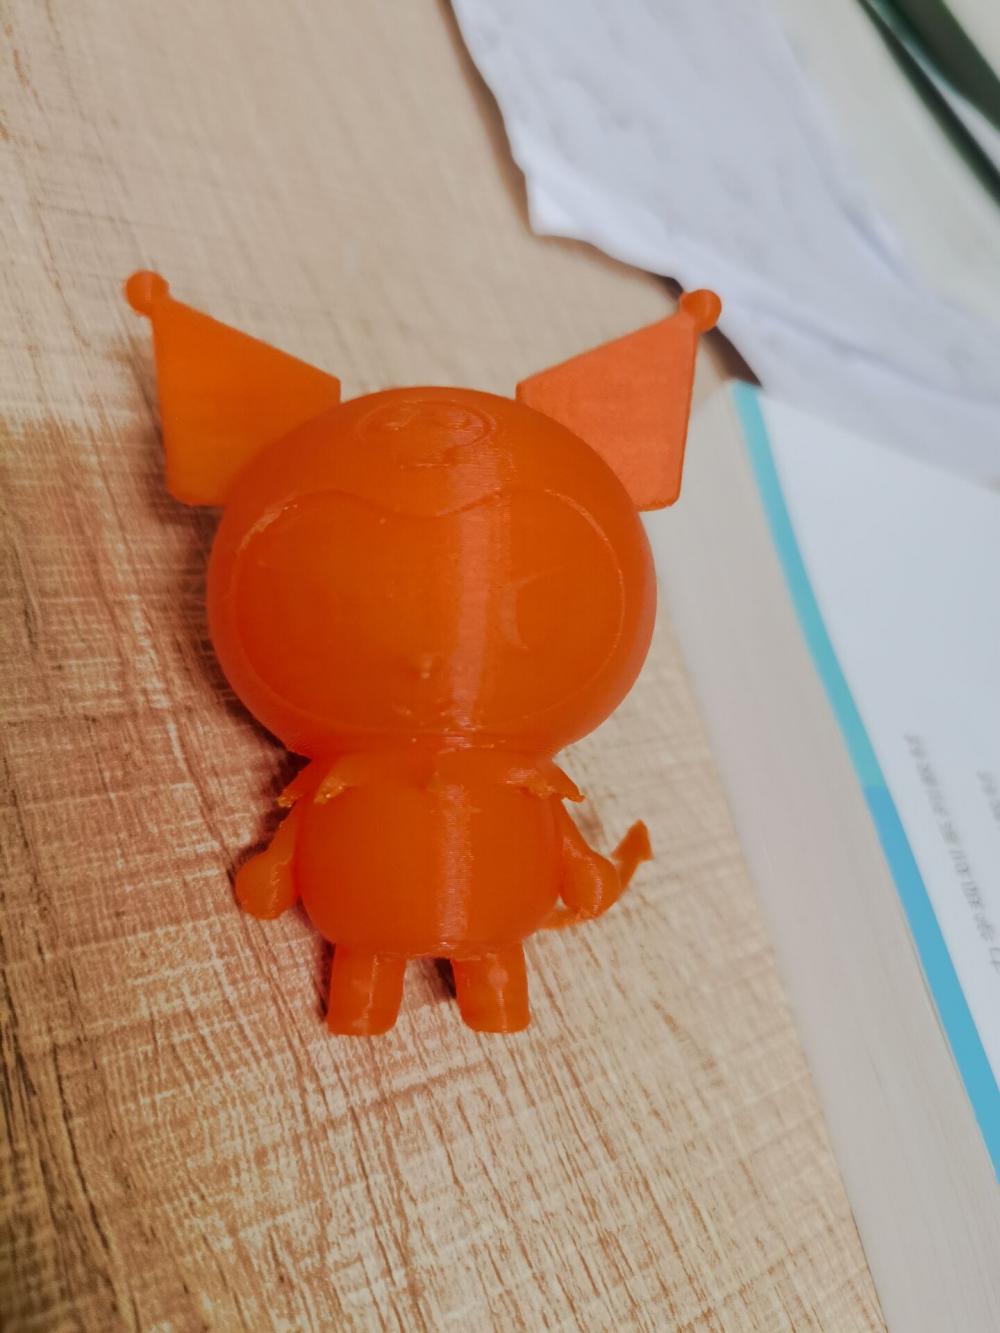 库洛米3D打印模型